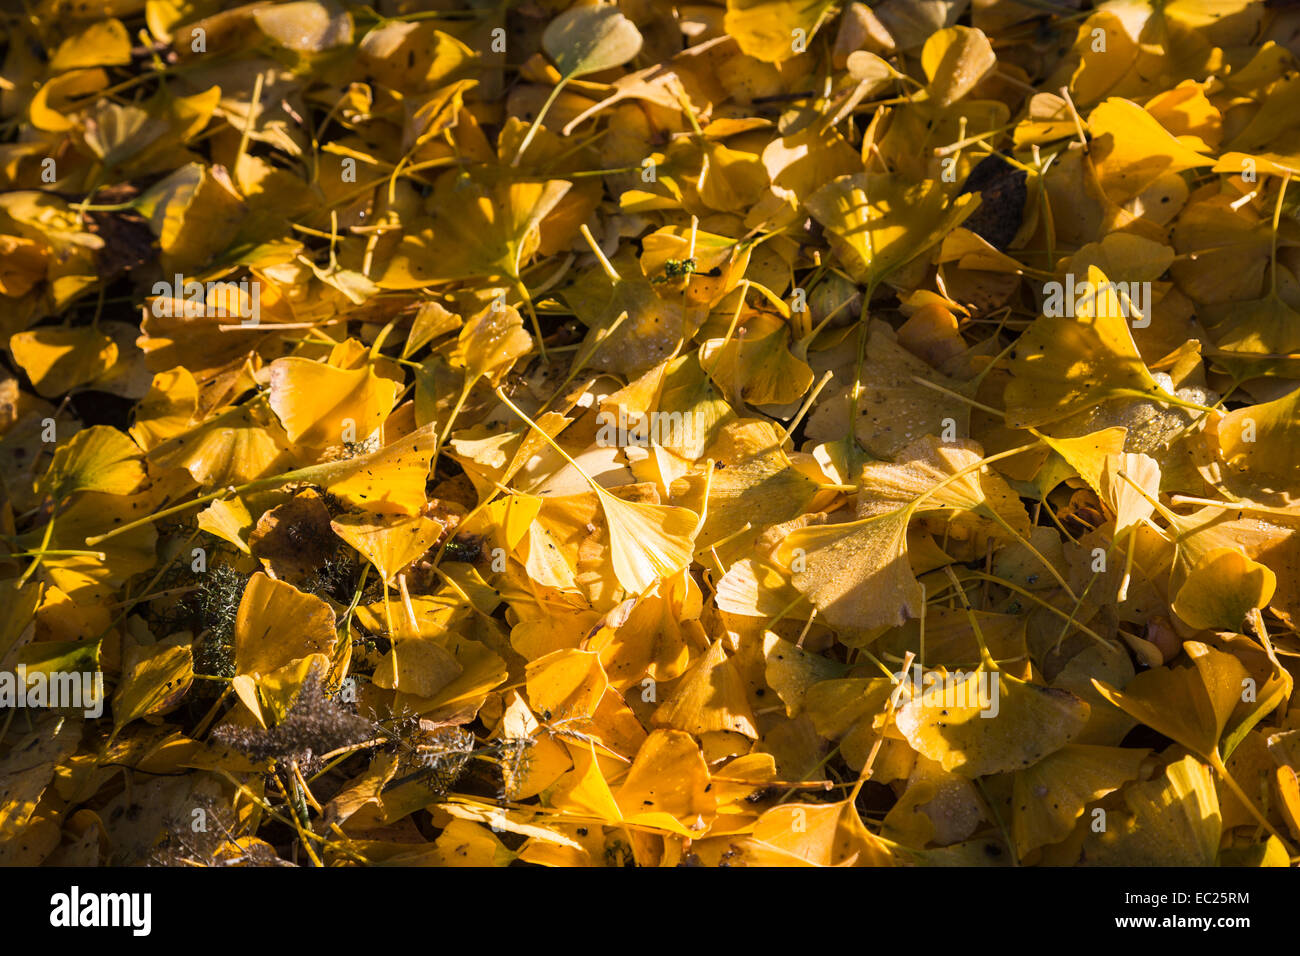 Alfombra estacional de amarillo hojas caídas de un ginkgo biloba o maidenhair tree en invierno, un fósil viviente nativo de China, RHS Wisley Gardens, Surrey Foto de stock